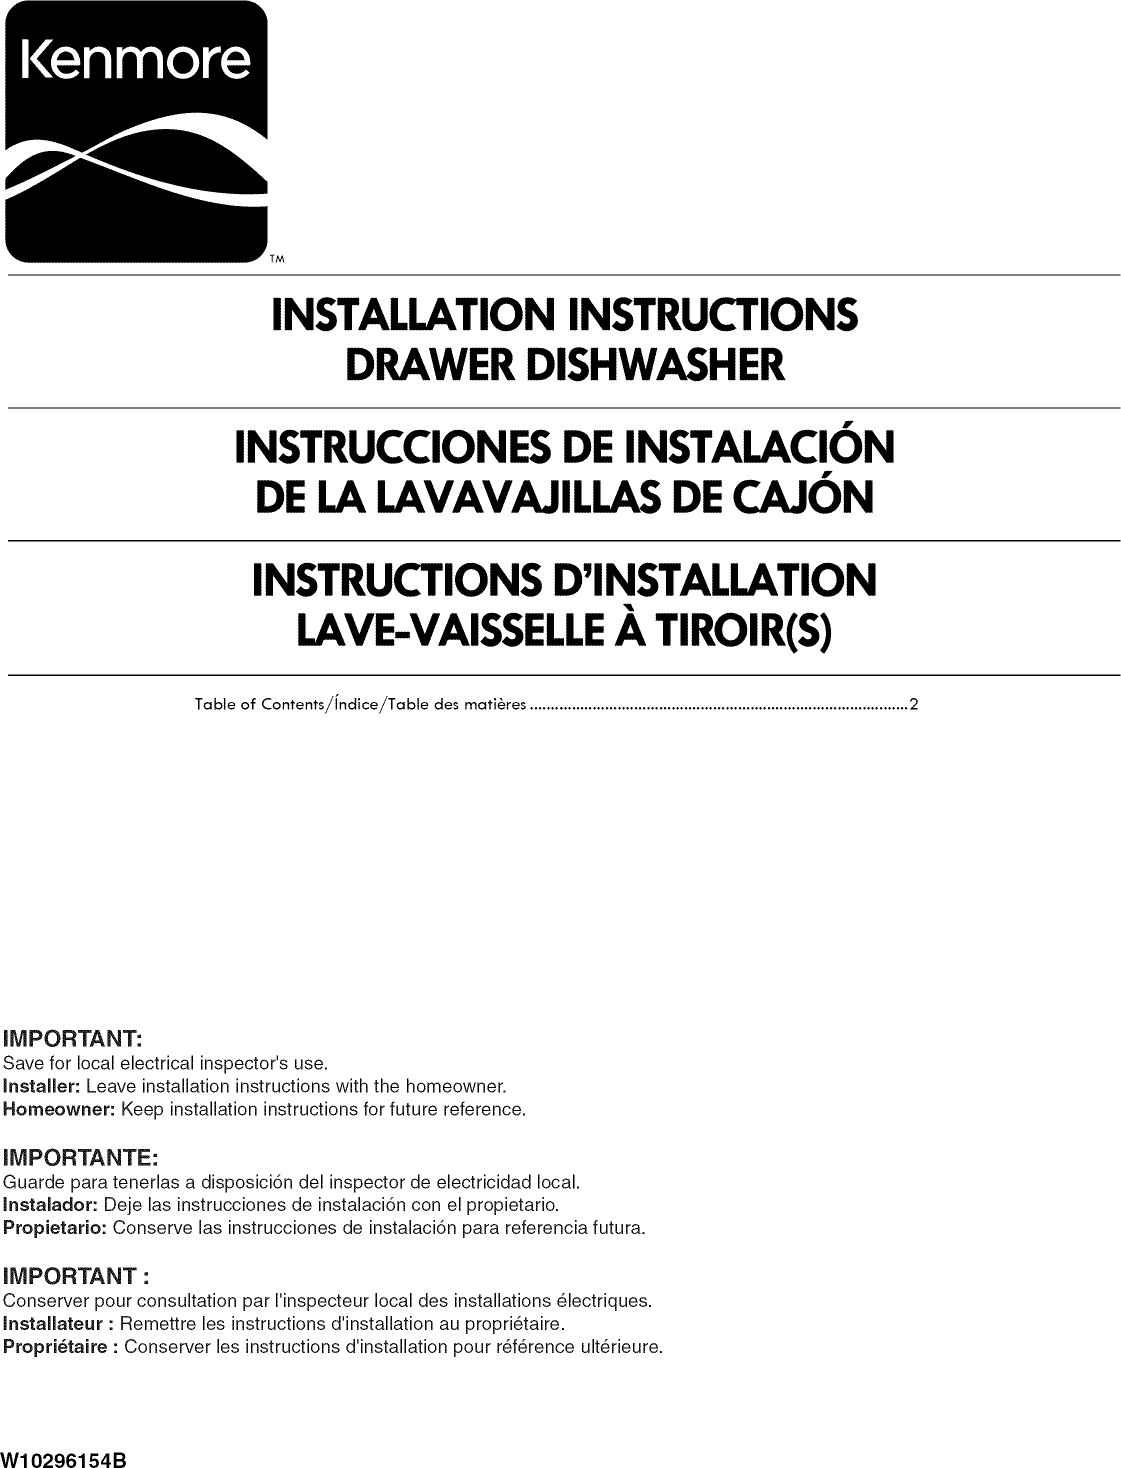 Kenmore Elite 665133426 User Manual Drawer Dishwasher Manuals And